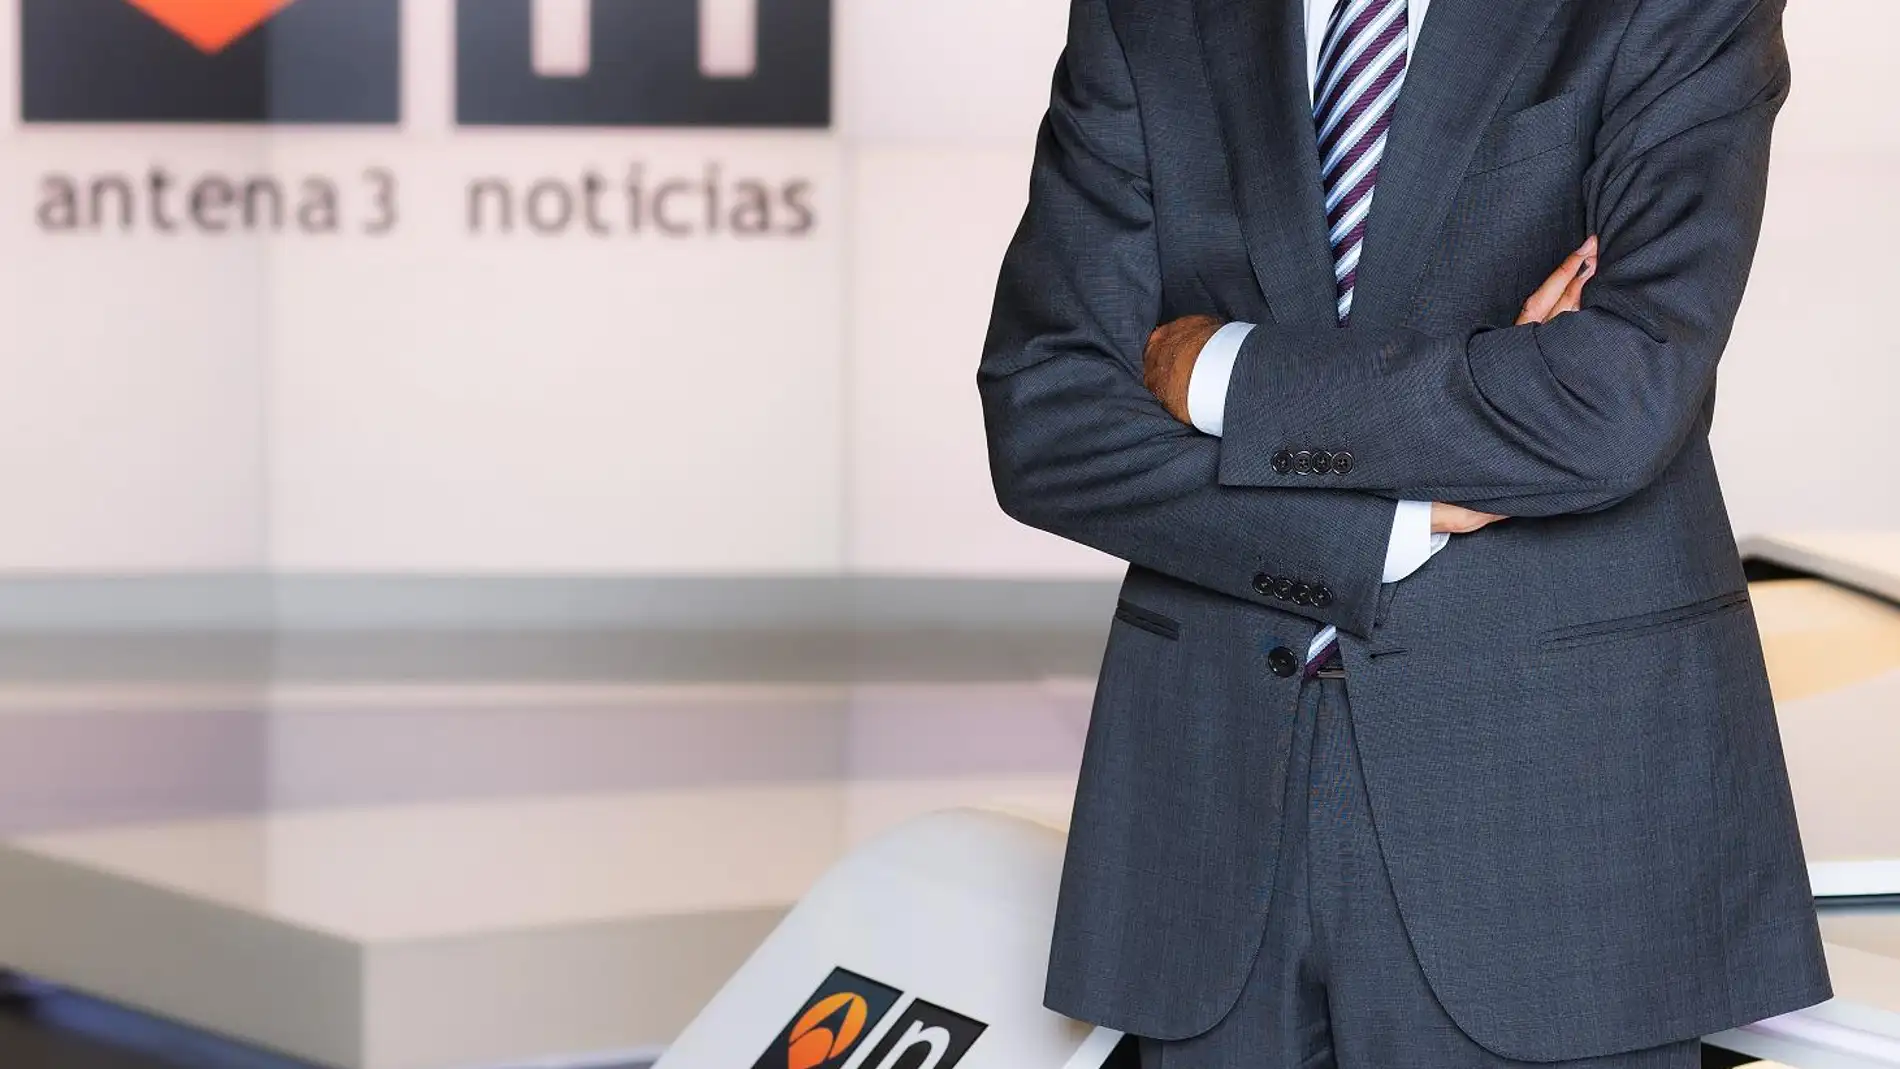 Matías Prats, veteranía enlos informativos de Antena 3